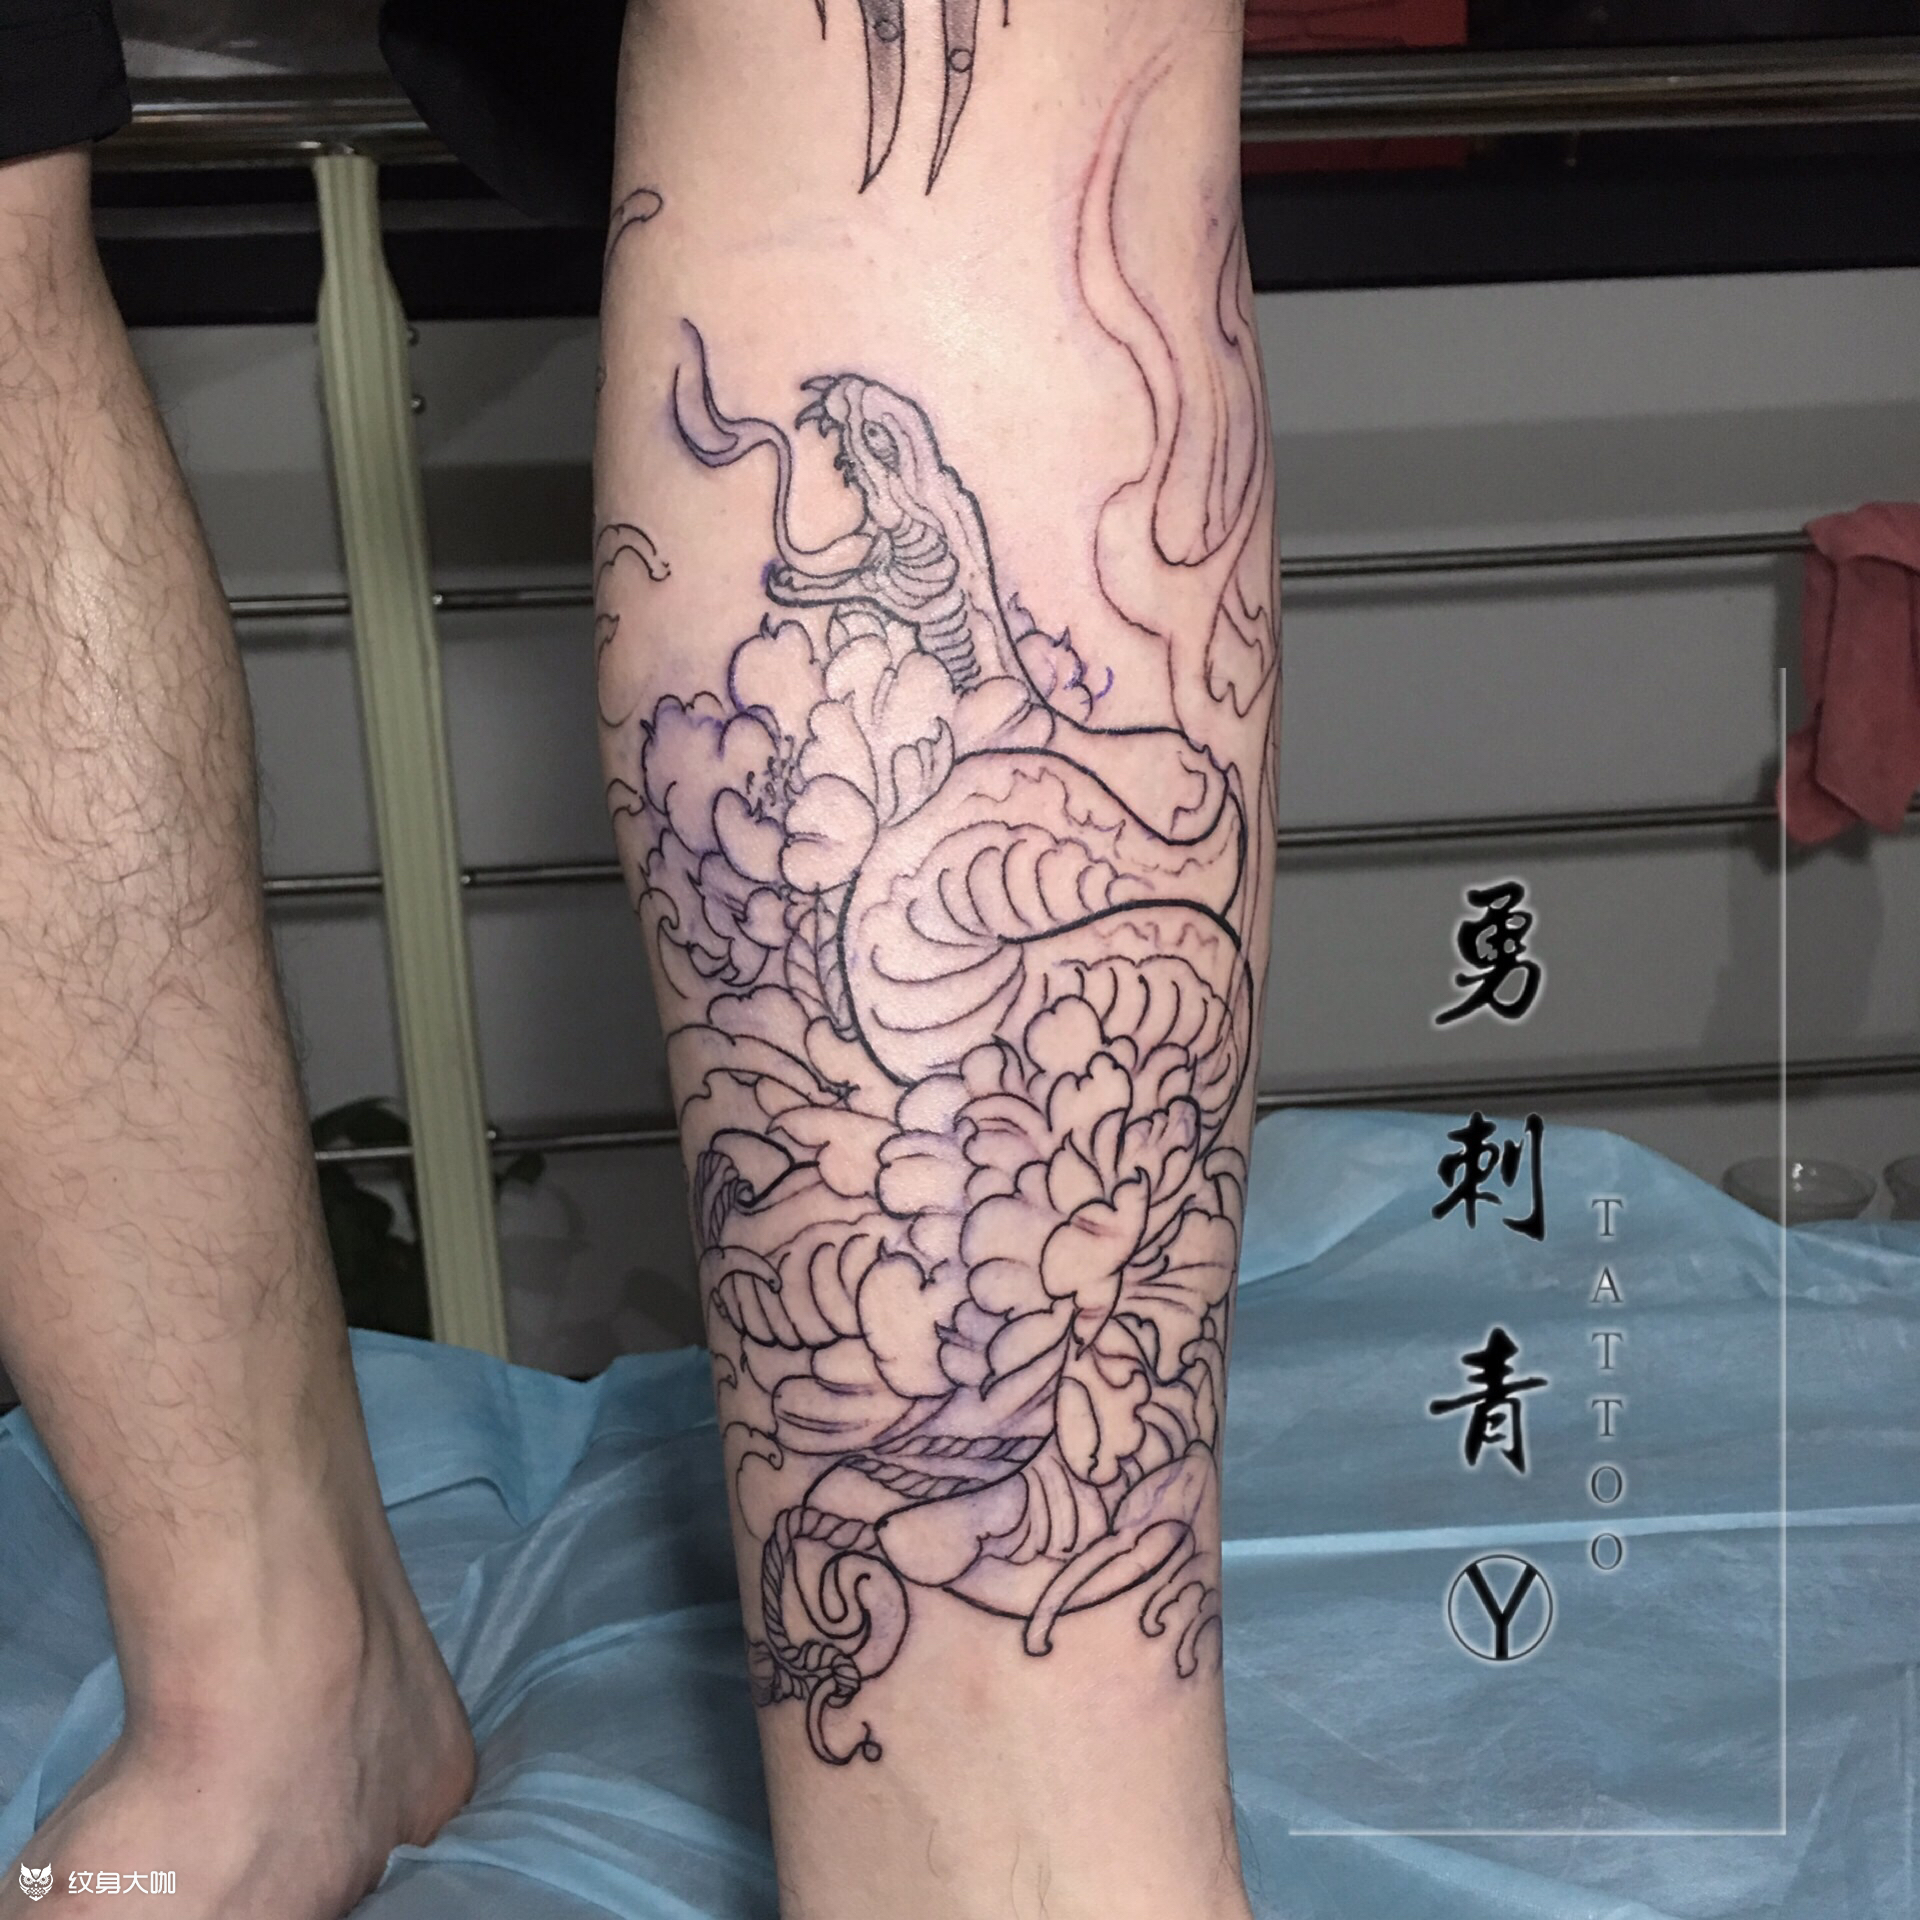 十二生肖之大龙小龙_纹身图案手稿图片_勇,的纹身作品